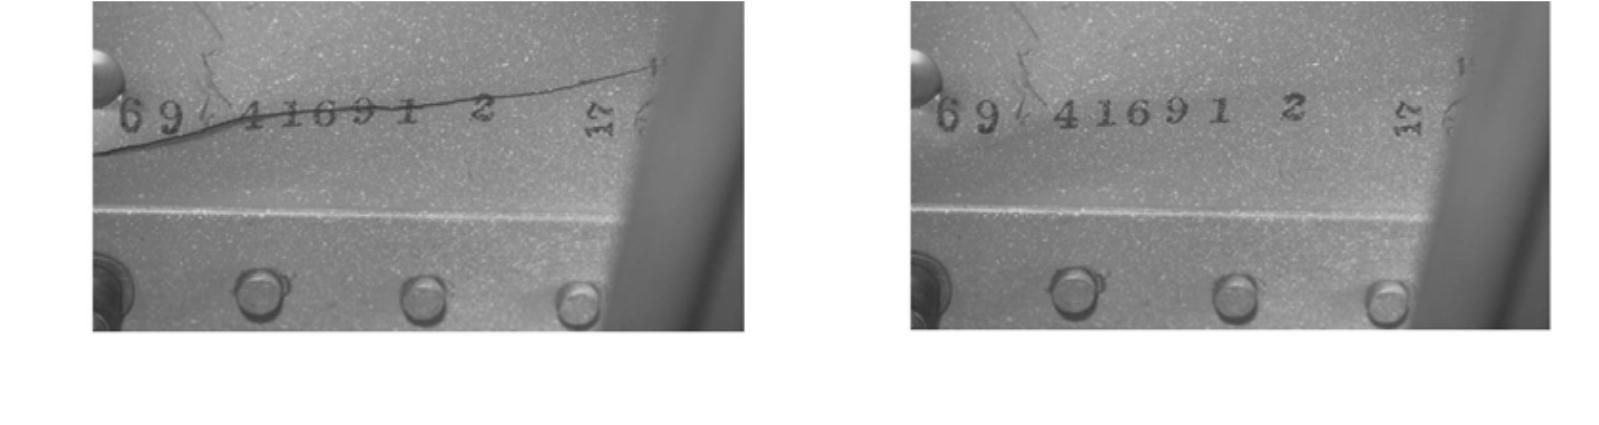 21 Kuvio 15. Vasemmassa yläkulmassa on kuva halkeamasta ja oikeassa yläkulman kuvassa ei ole halkeamaa. Kahdessa alemmassa kuvassa kuvia on sumennettu havainnollistamaan alentunutta näöntarkkuutta.